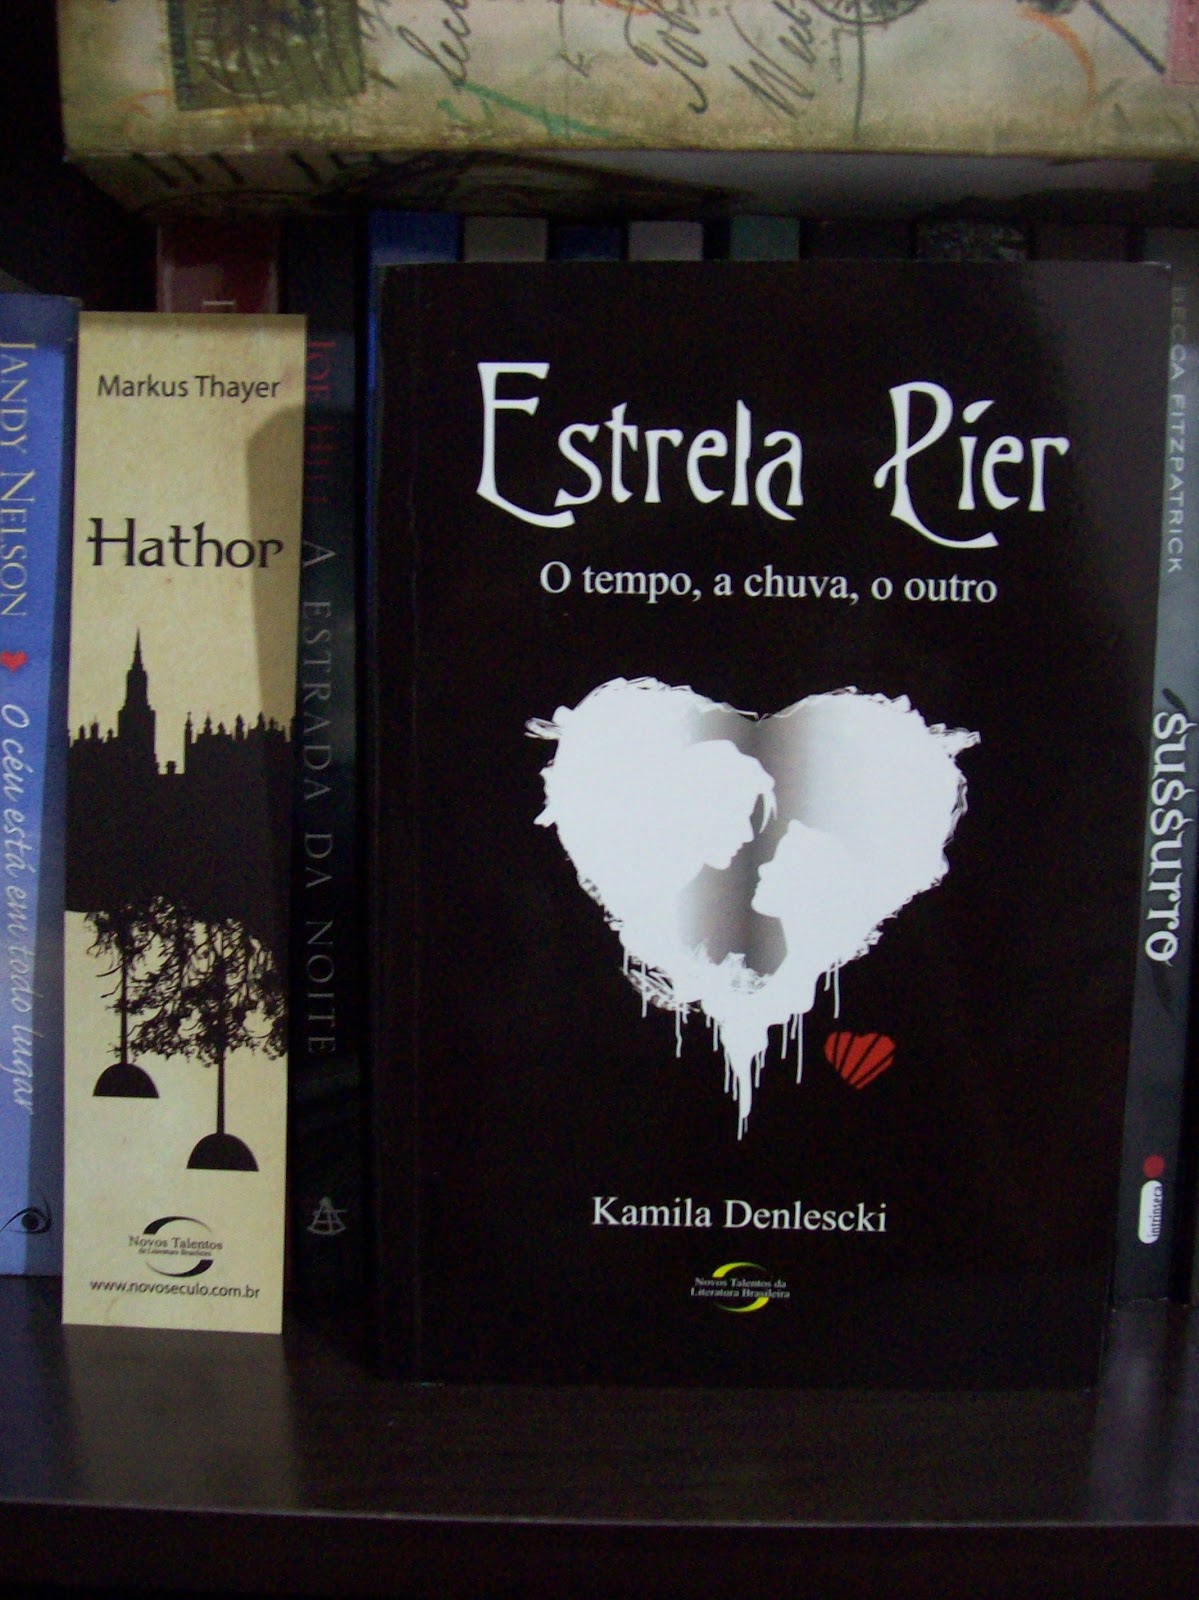 Reino Xadrez: Sorteio dos 3 livros da Fabiane Ribeiro autografados!!!